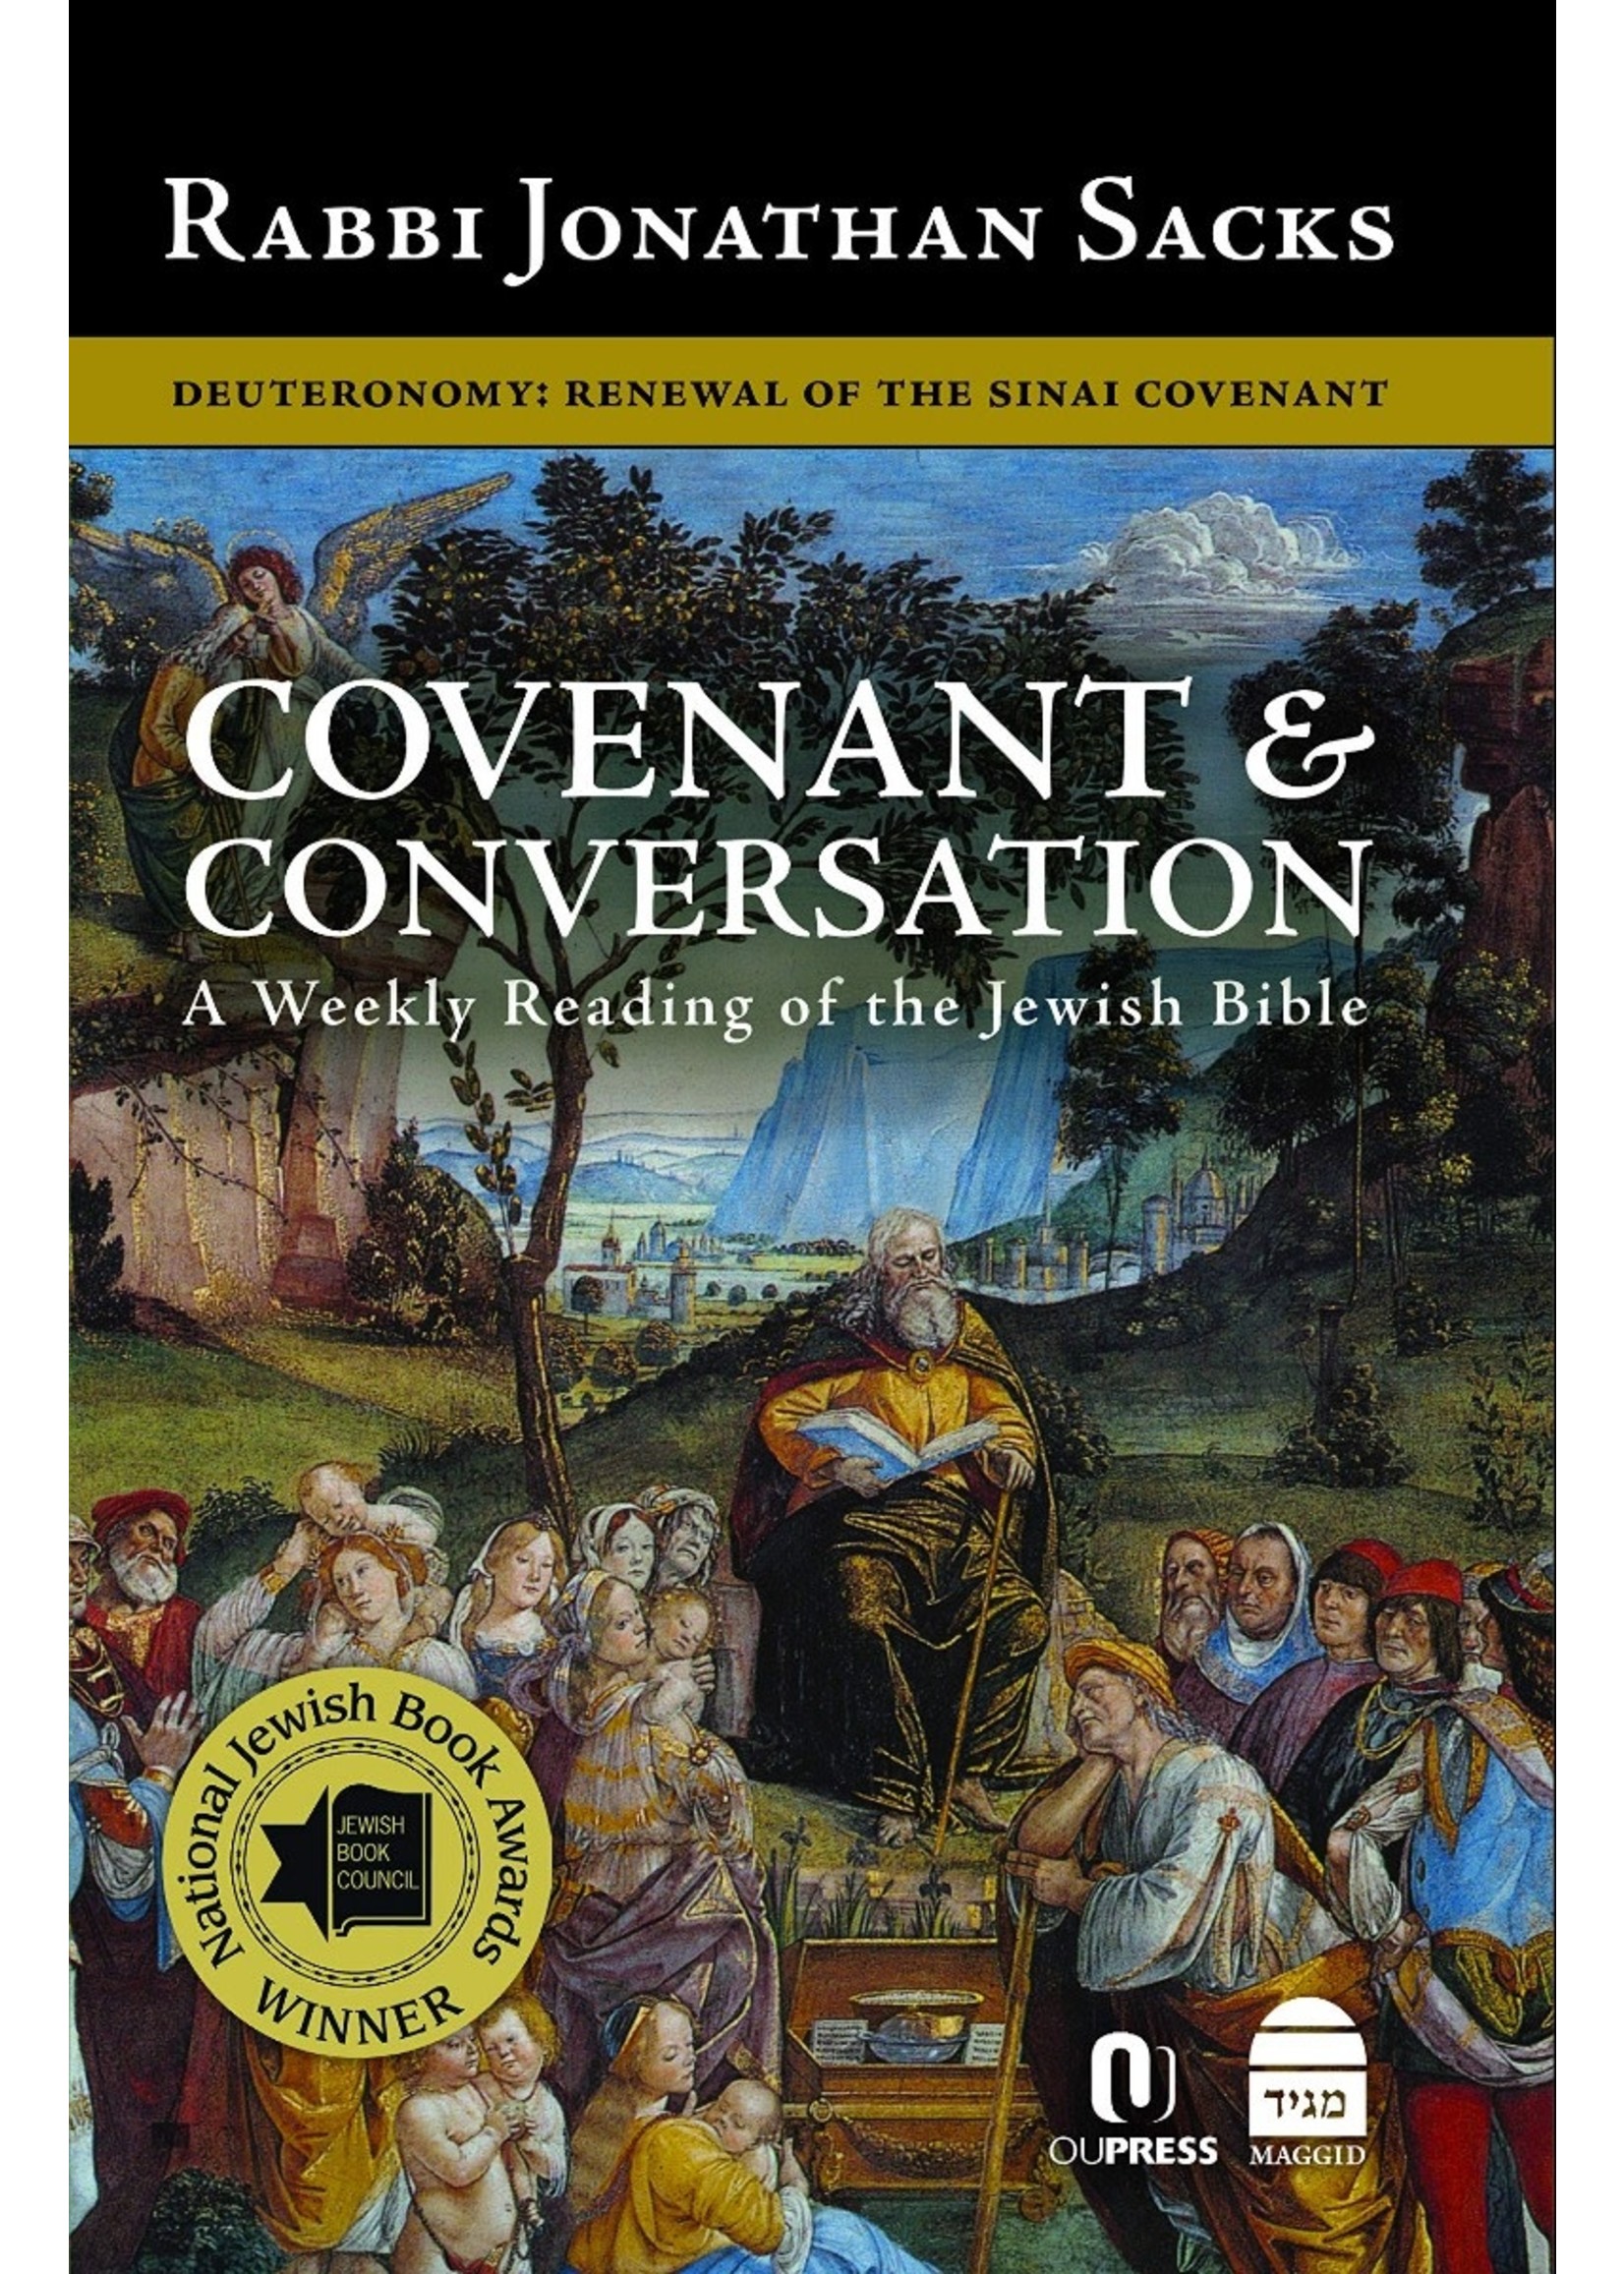 COVENANT & CONVERSATION VOL. 5 - DEVARIM